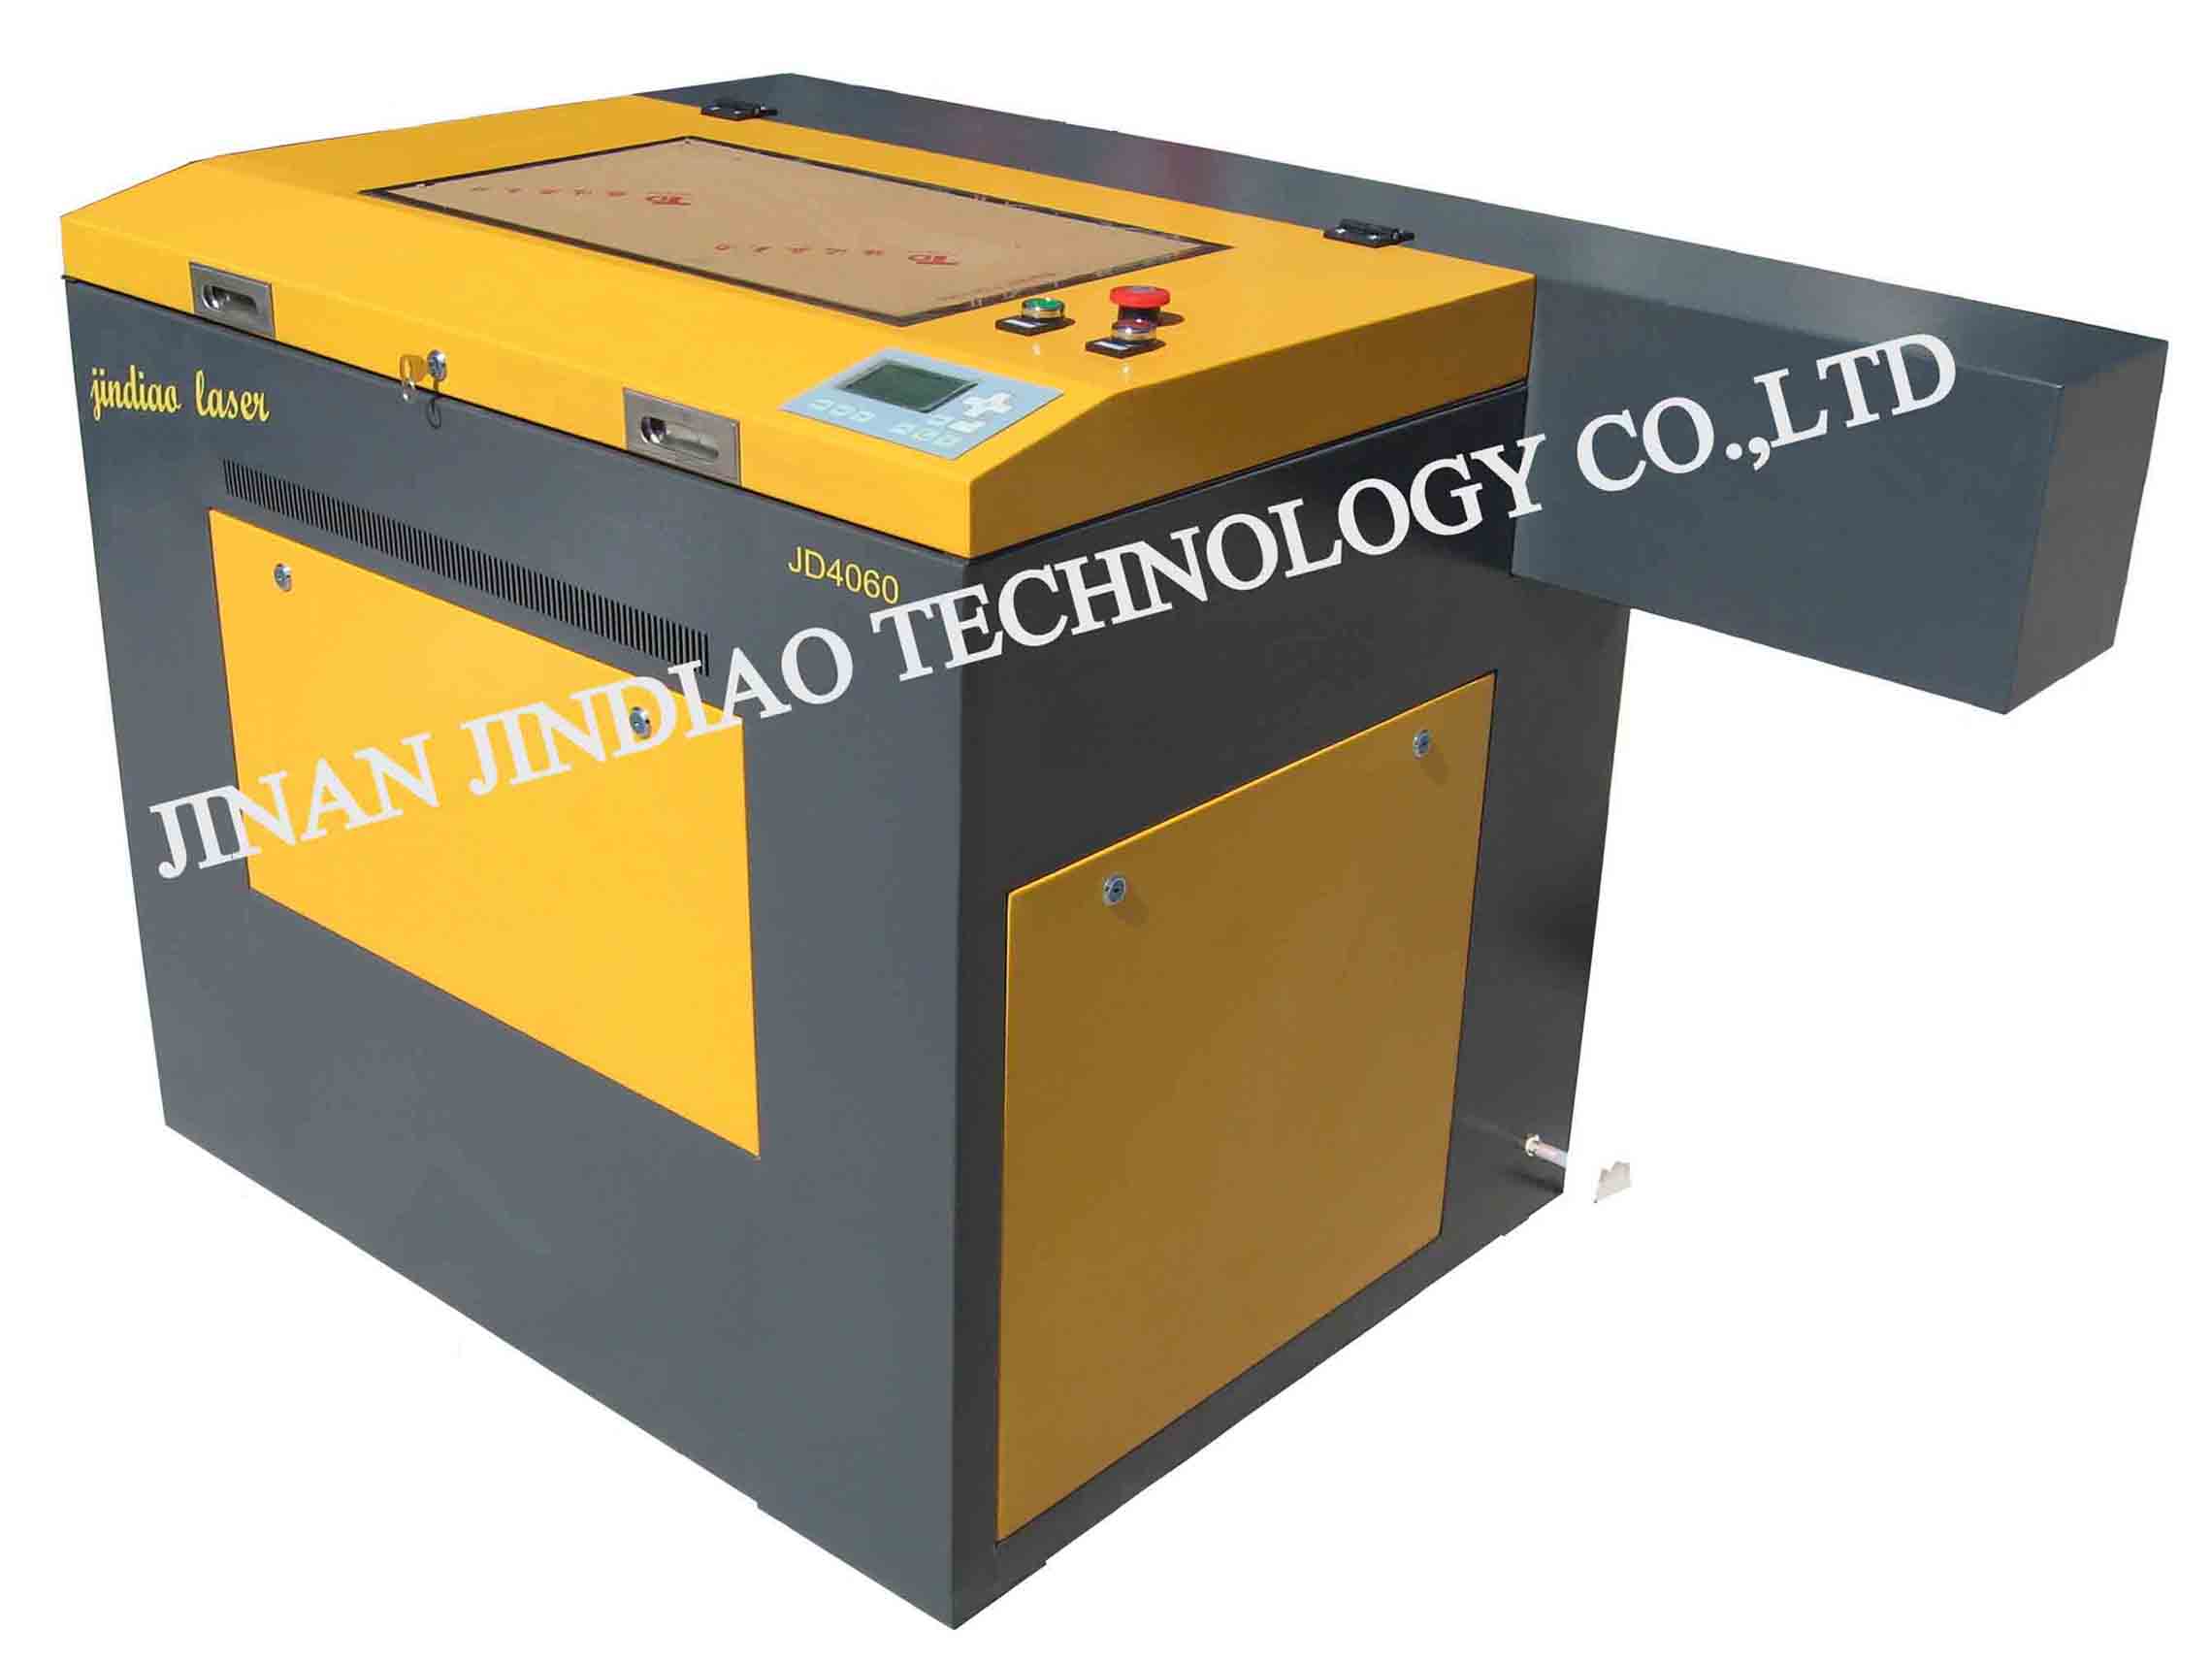 JD4060(Laser Engraving Machine) Made in Korea